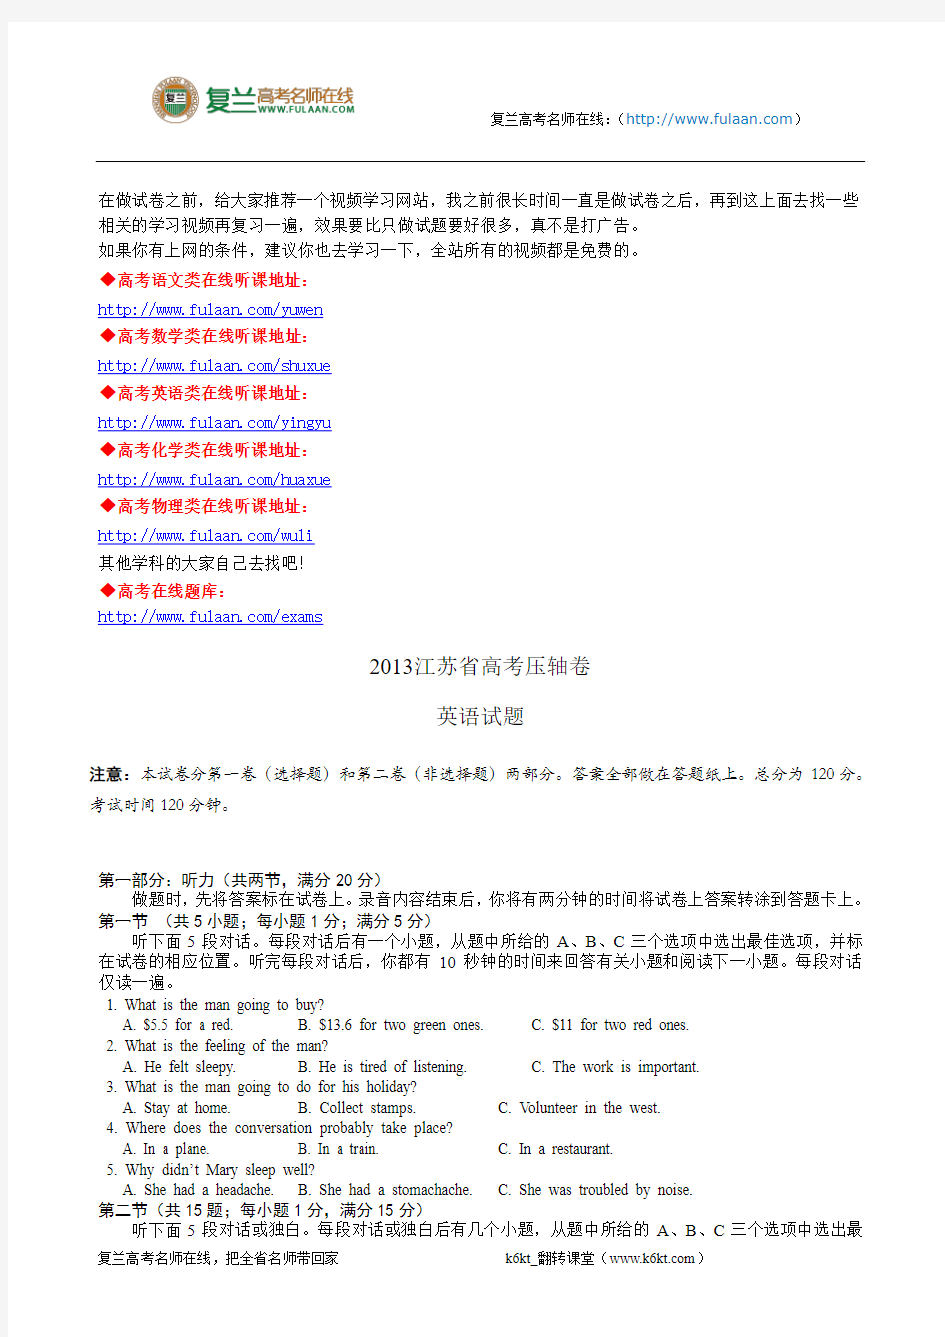 2013江苏省高考压轴卷英语试题-复兰高考名师在线精编解析版